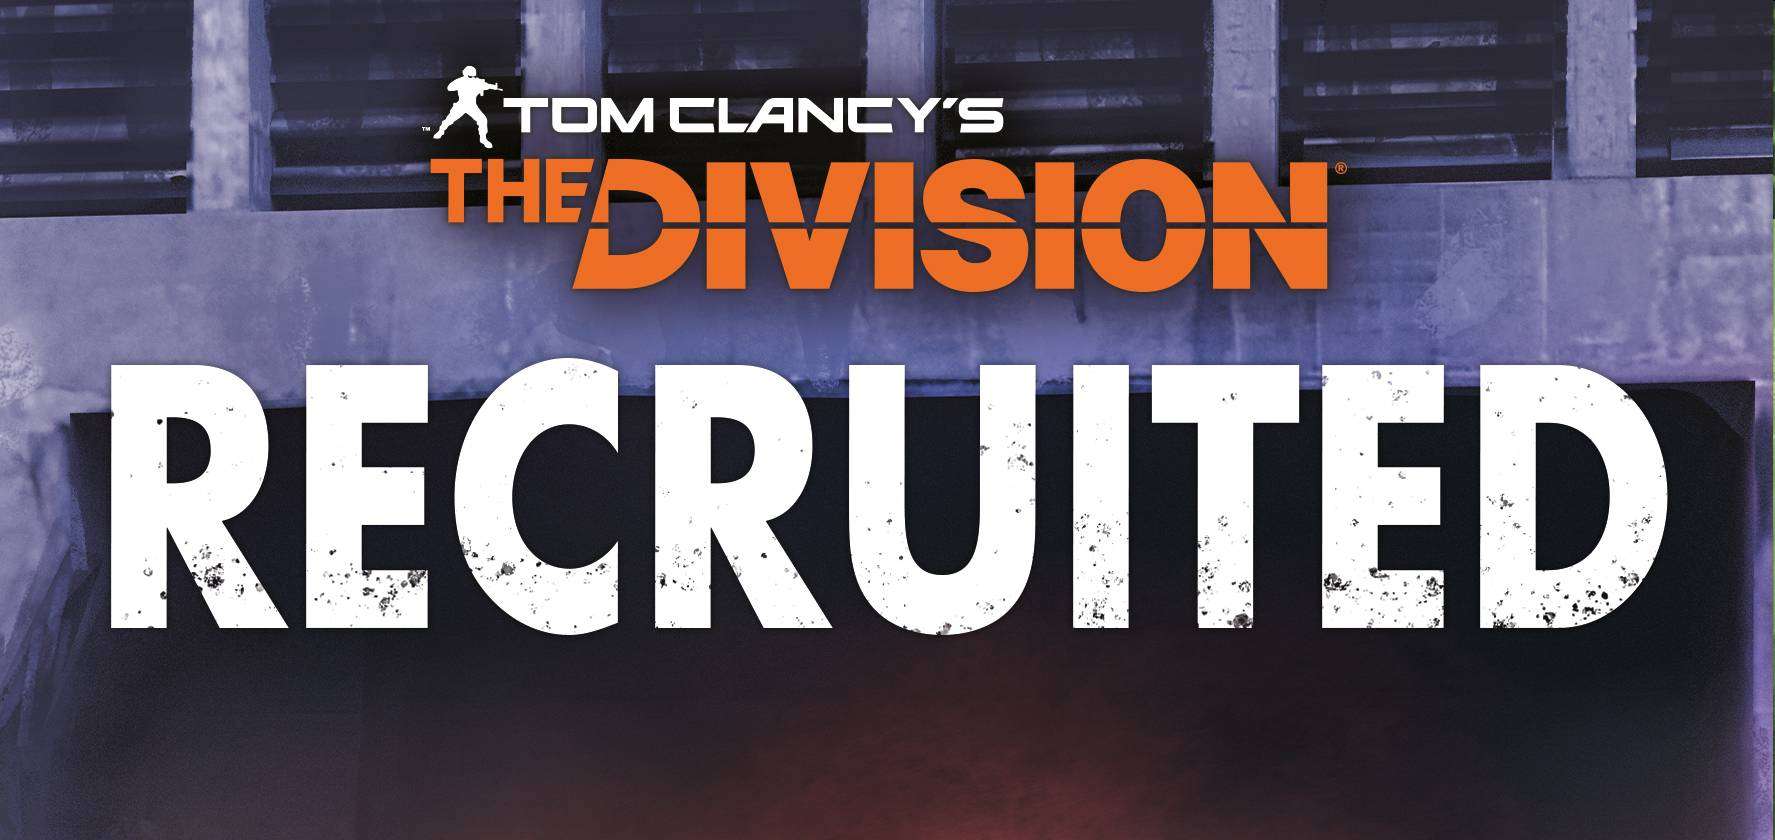 Tom Clancy’s The Division - Recruited è il primo romanzo tratto dal celebre videogioco Tom Clancy’s The Division di Ubisoft